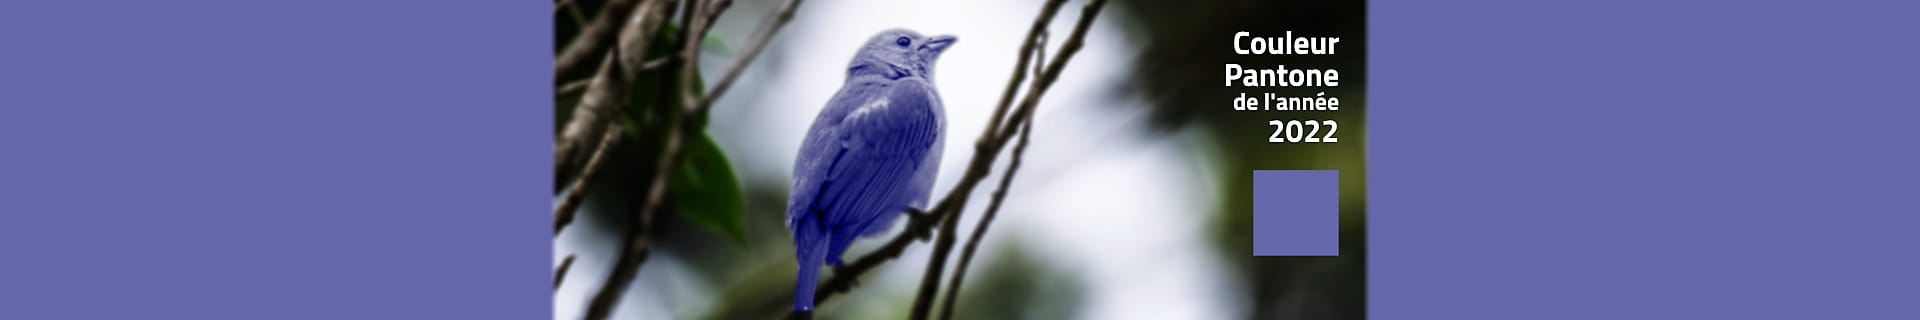 Photomontage d'un oiseau bleu et du texte de la couleur Pantone de l'année 2022